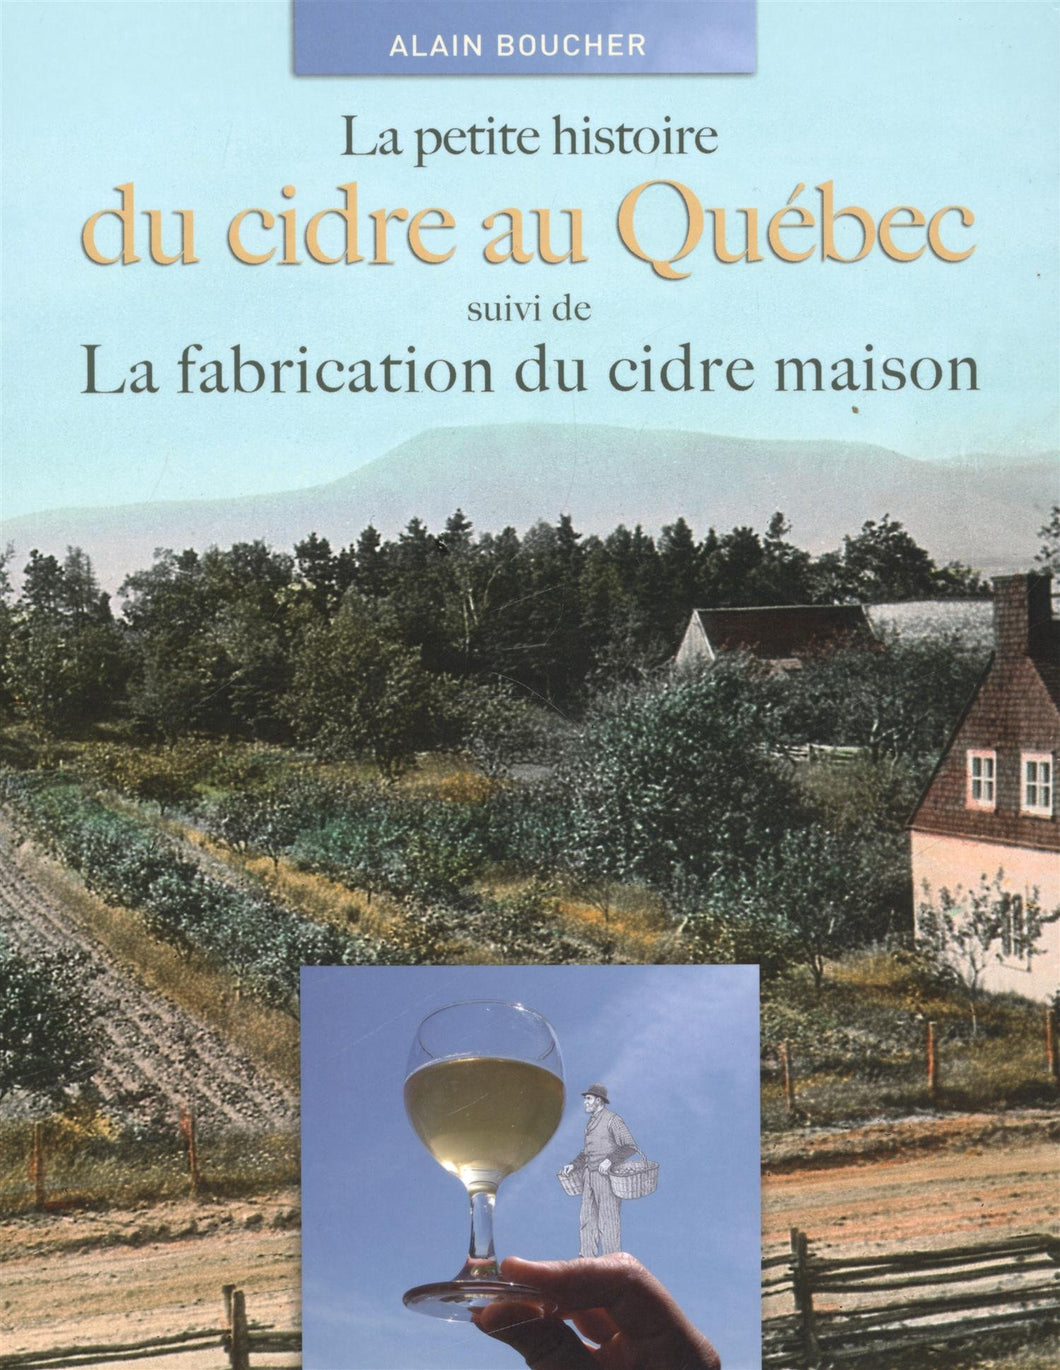 La petite histoire du cidre au Québec